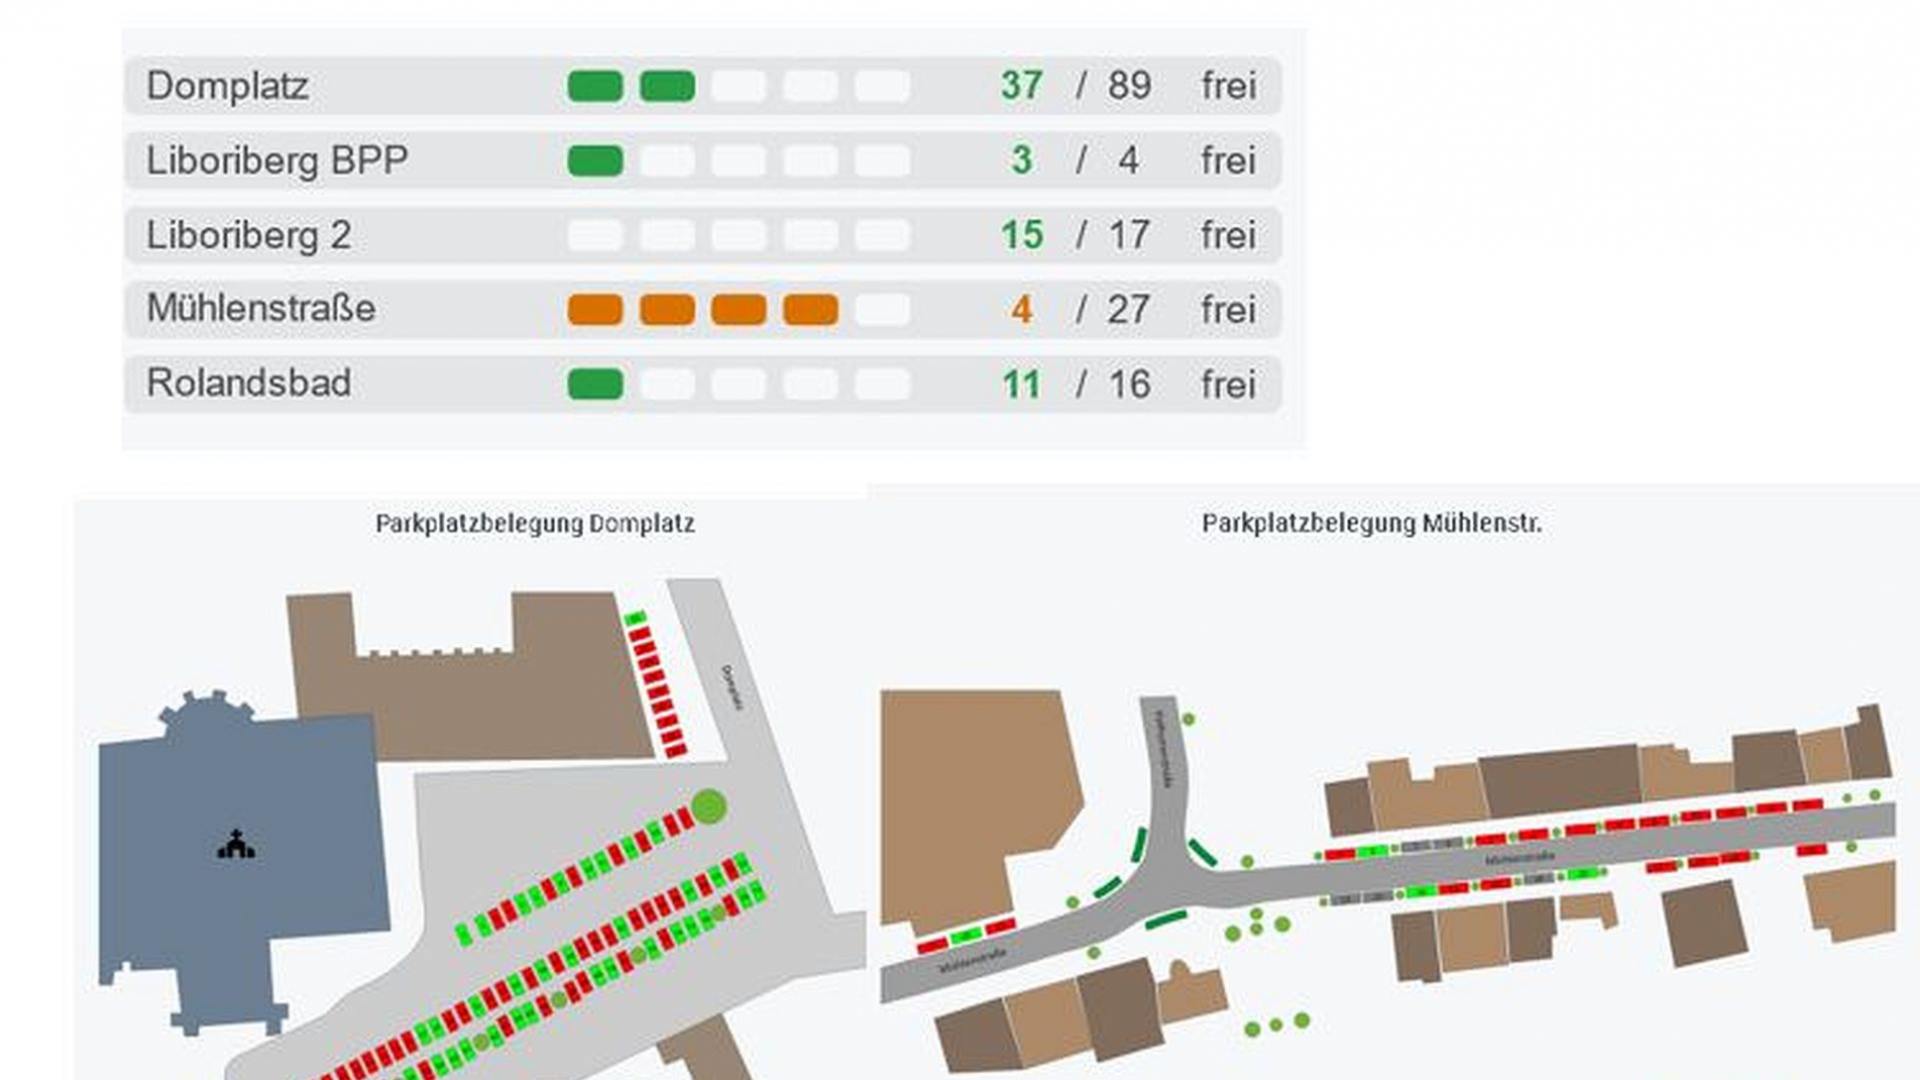 Echtzeitdaten aus dem LoRaWAN-Netz für den Abfallentsorgungs- und Stadtreinigungsbetrieb in Paderborn